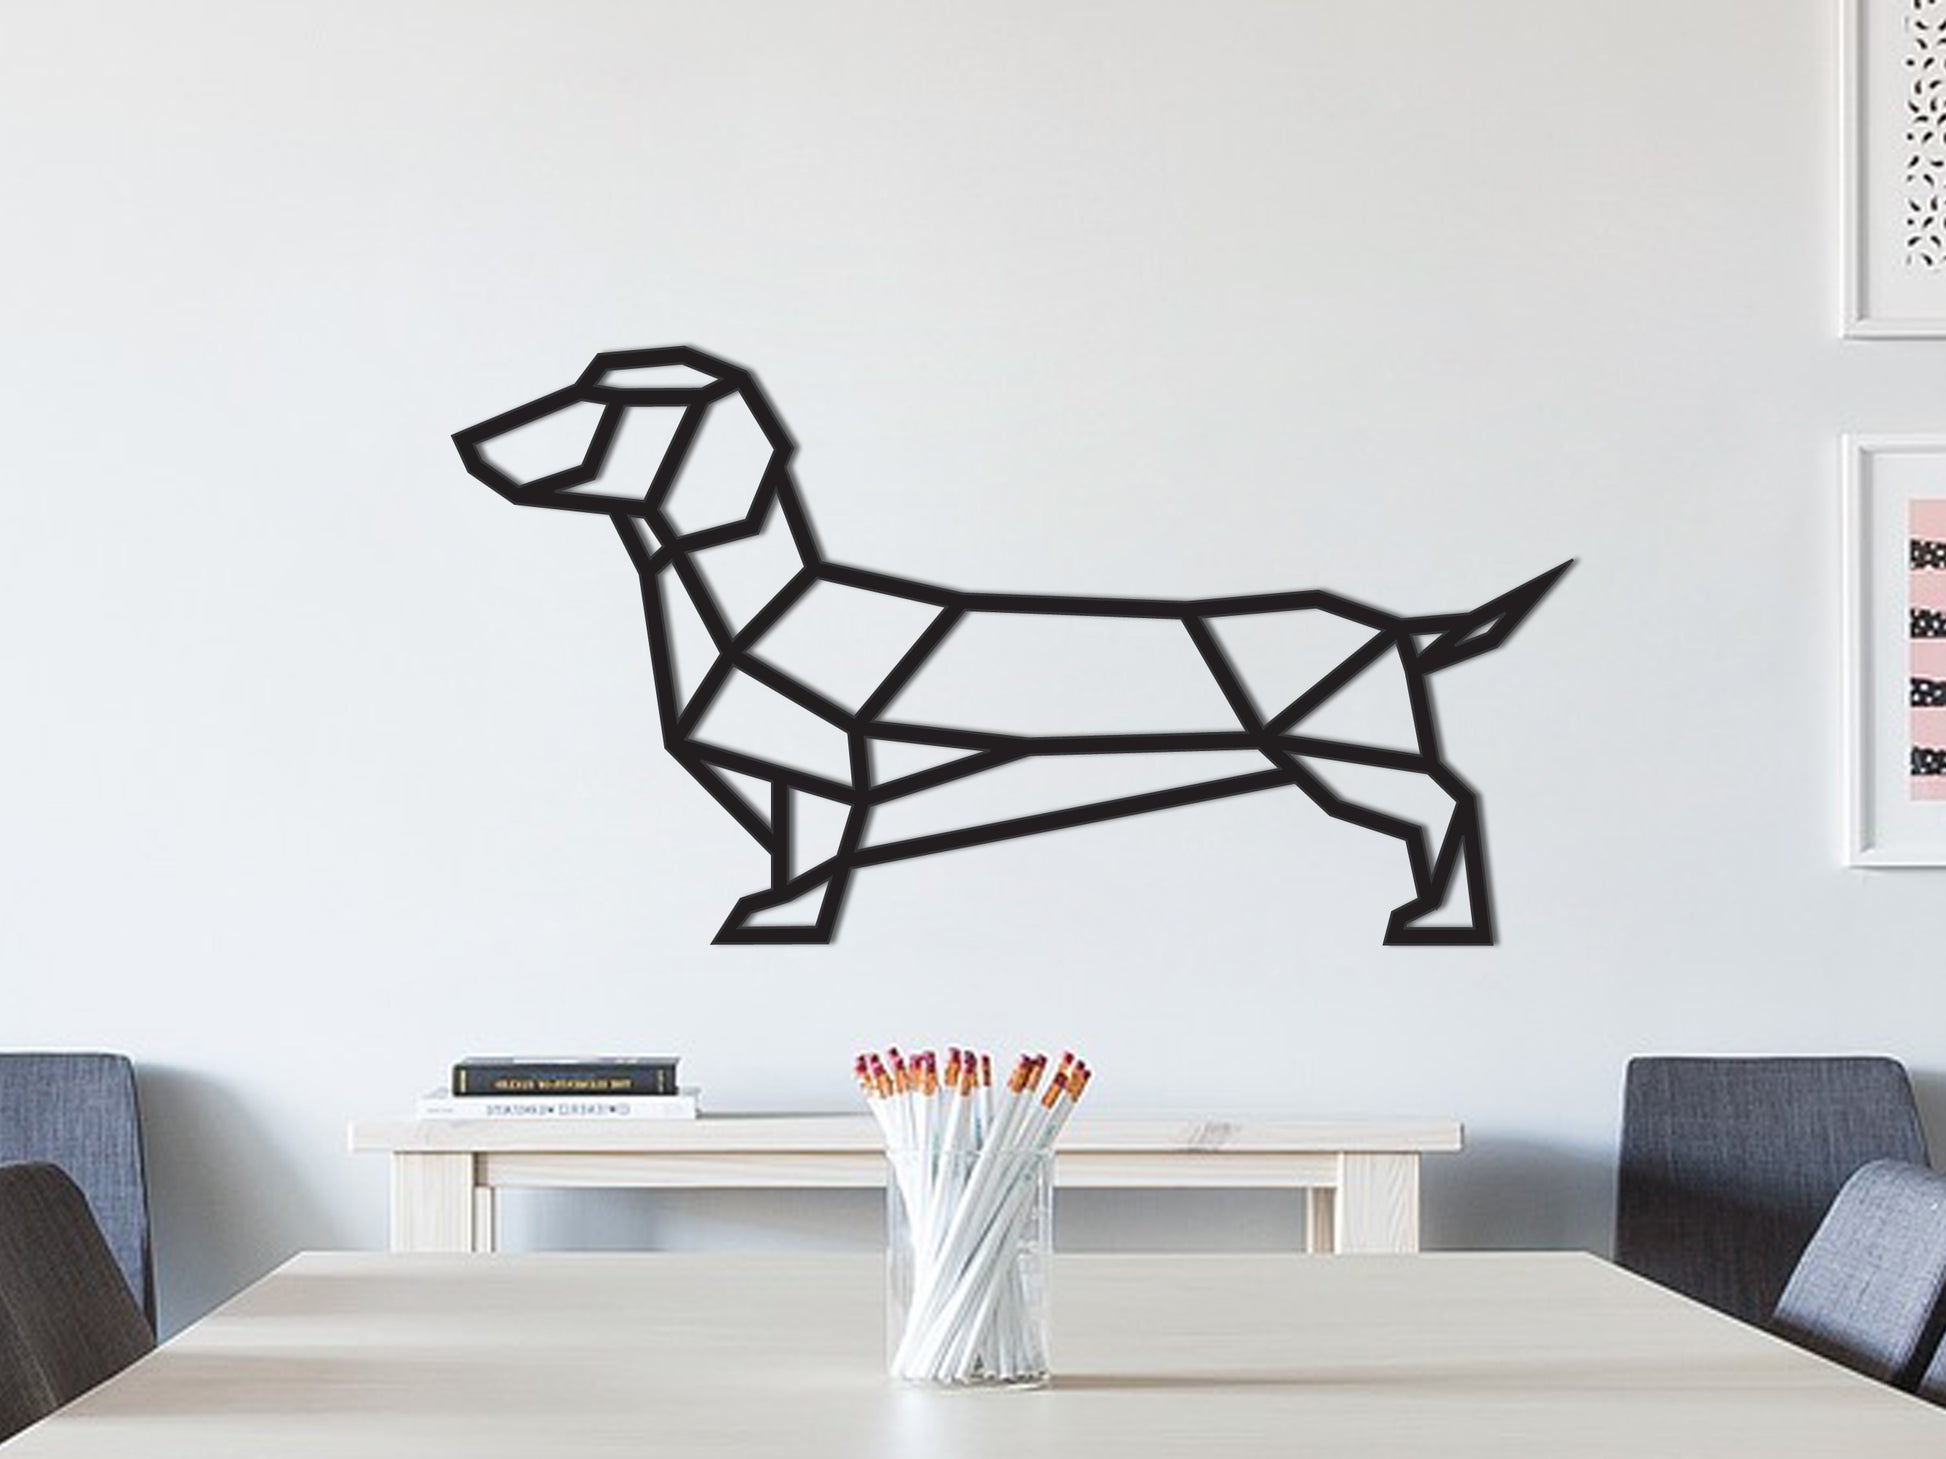 Geometric wall Wooden - Dachshund - - Wienerdog decoration dog – SOLID Sausage IDEA